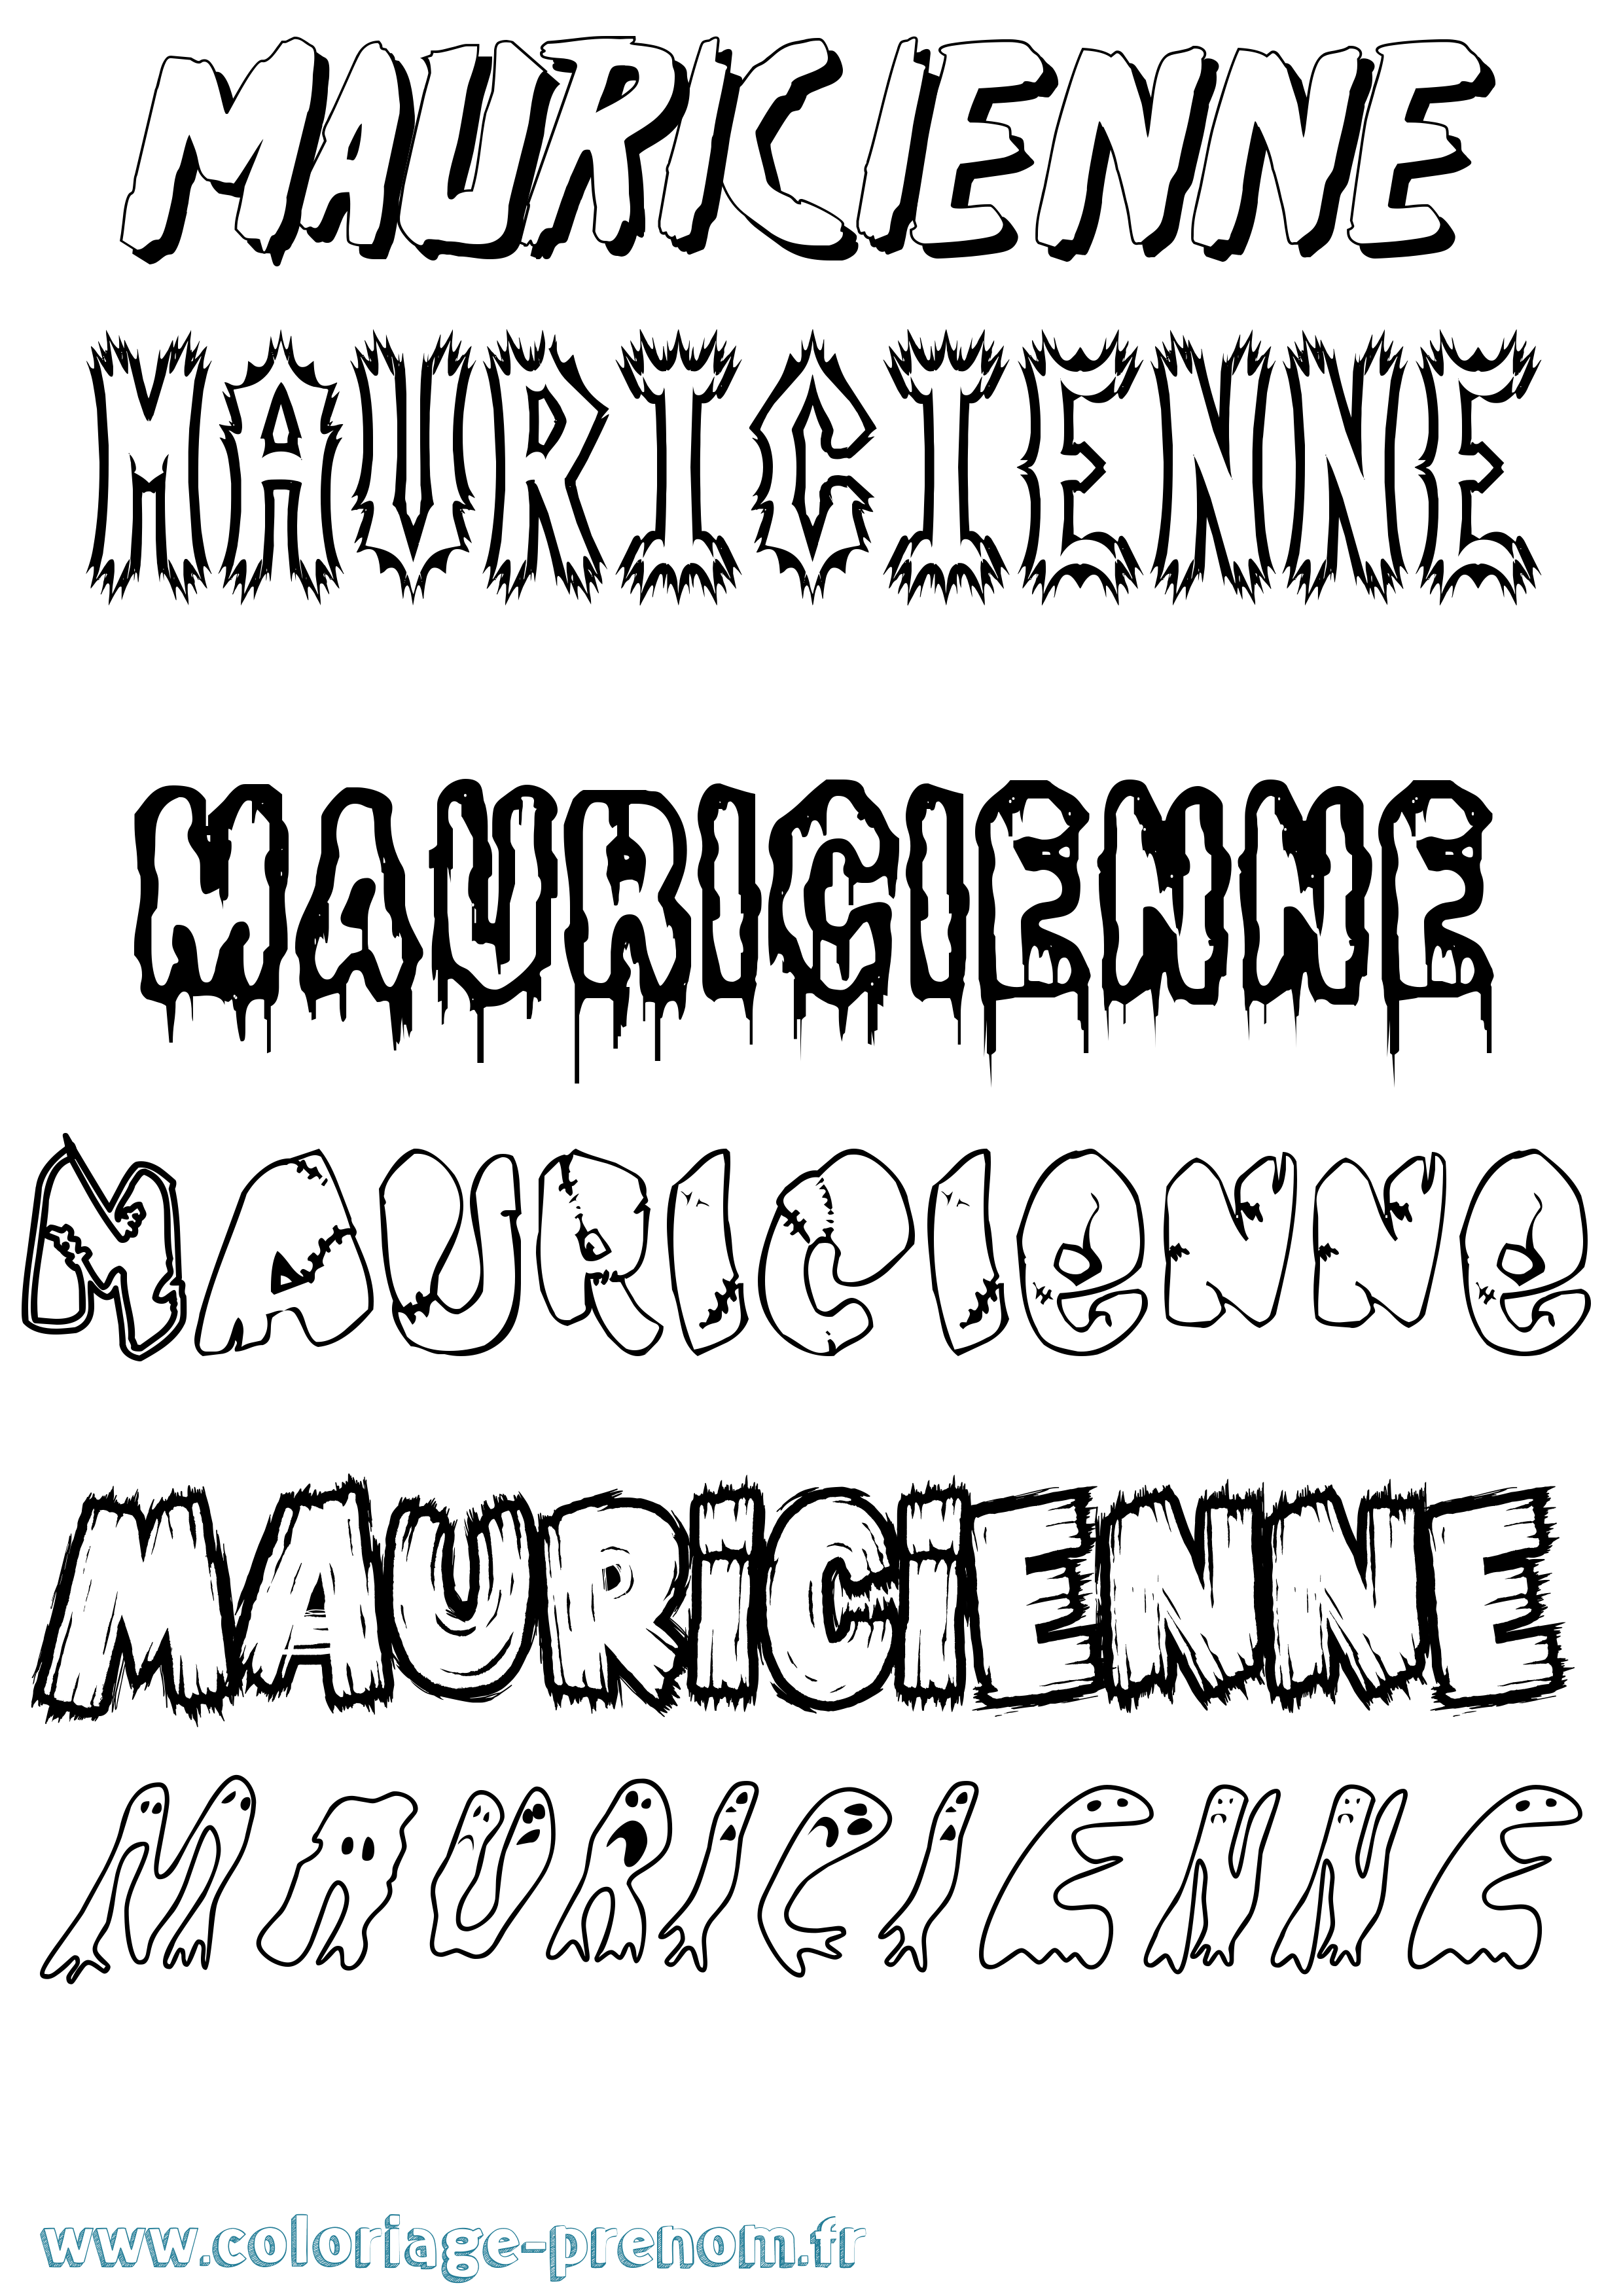 Coloriage prénom Mauricienne Frisson